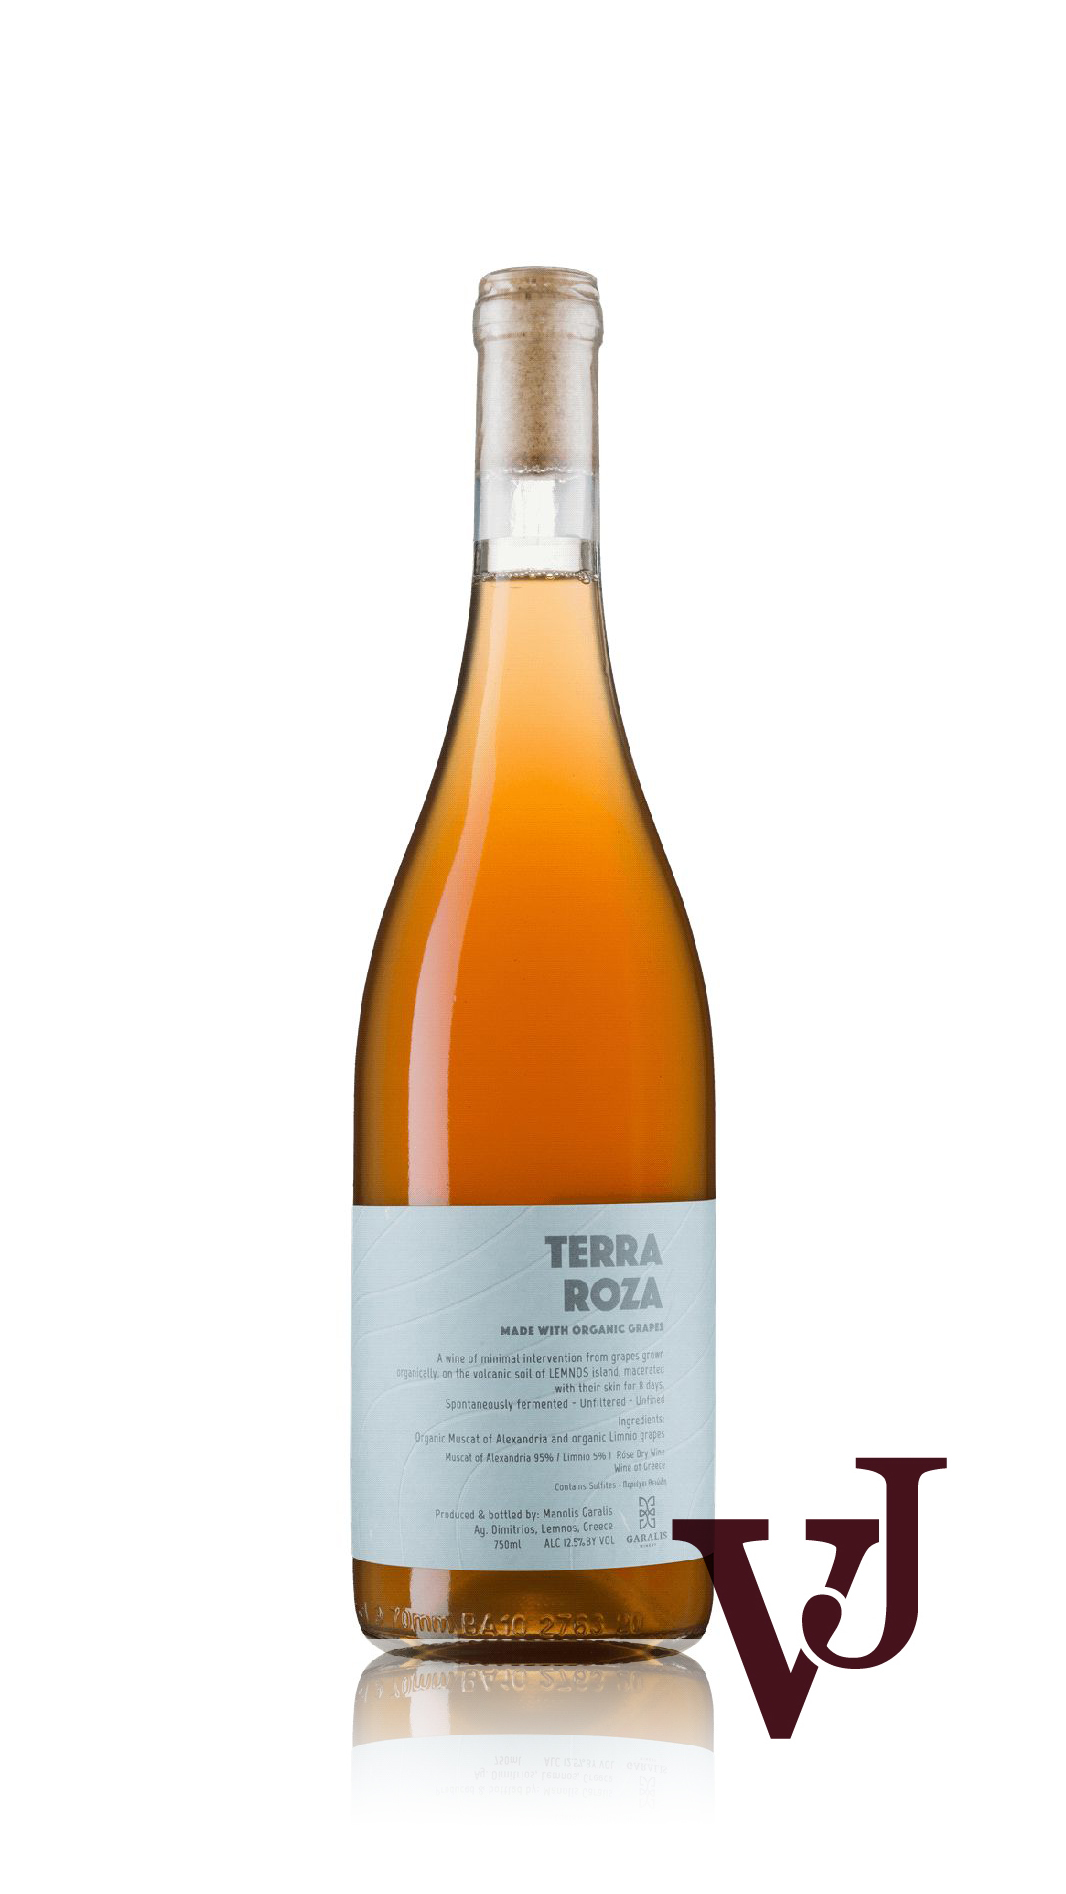 Rosé Vin - Terra Roza Garalis 2021 artikel nummer 7339001 från producenten Garalis från Grekland.